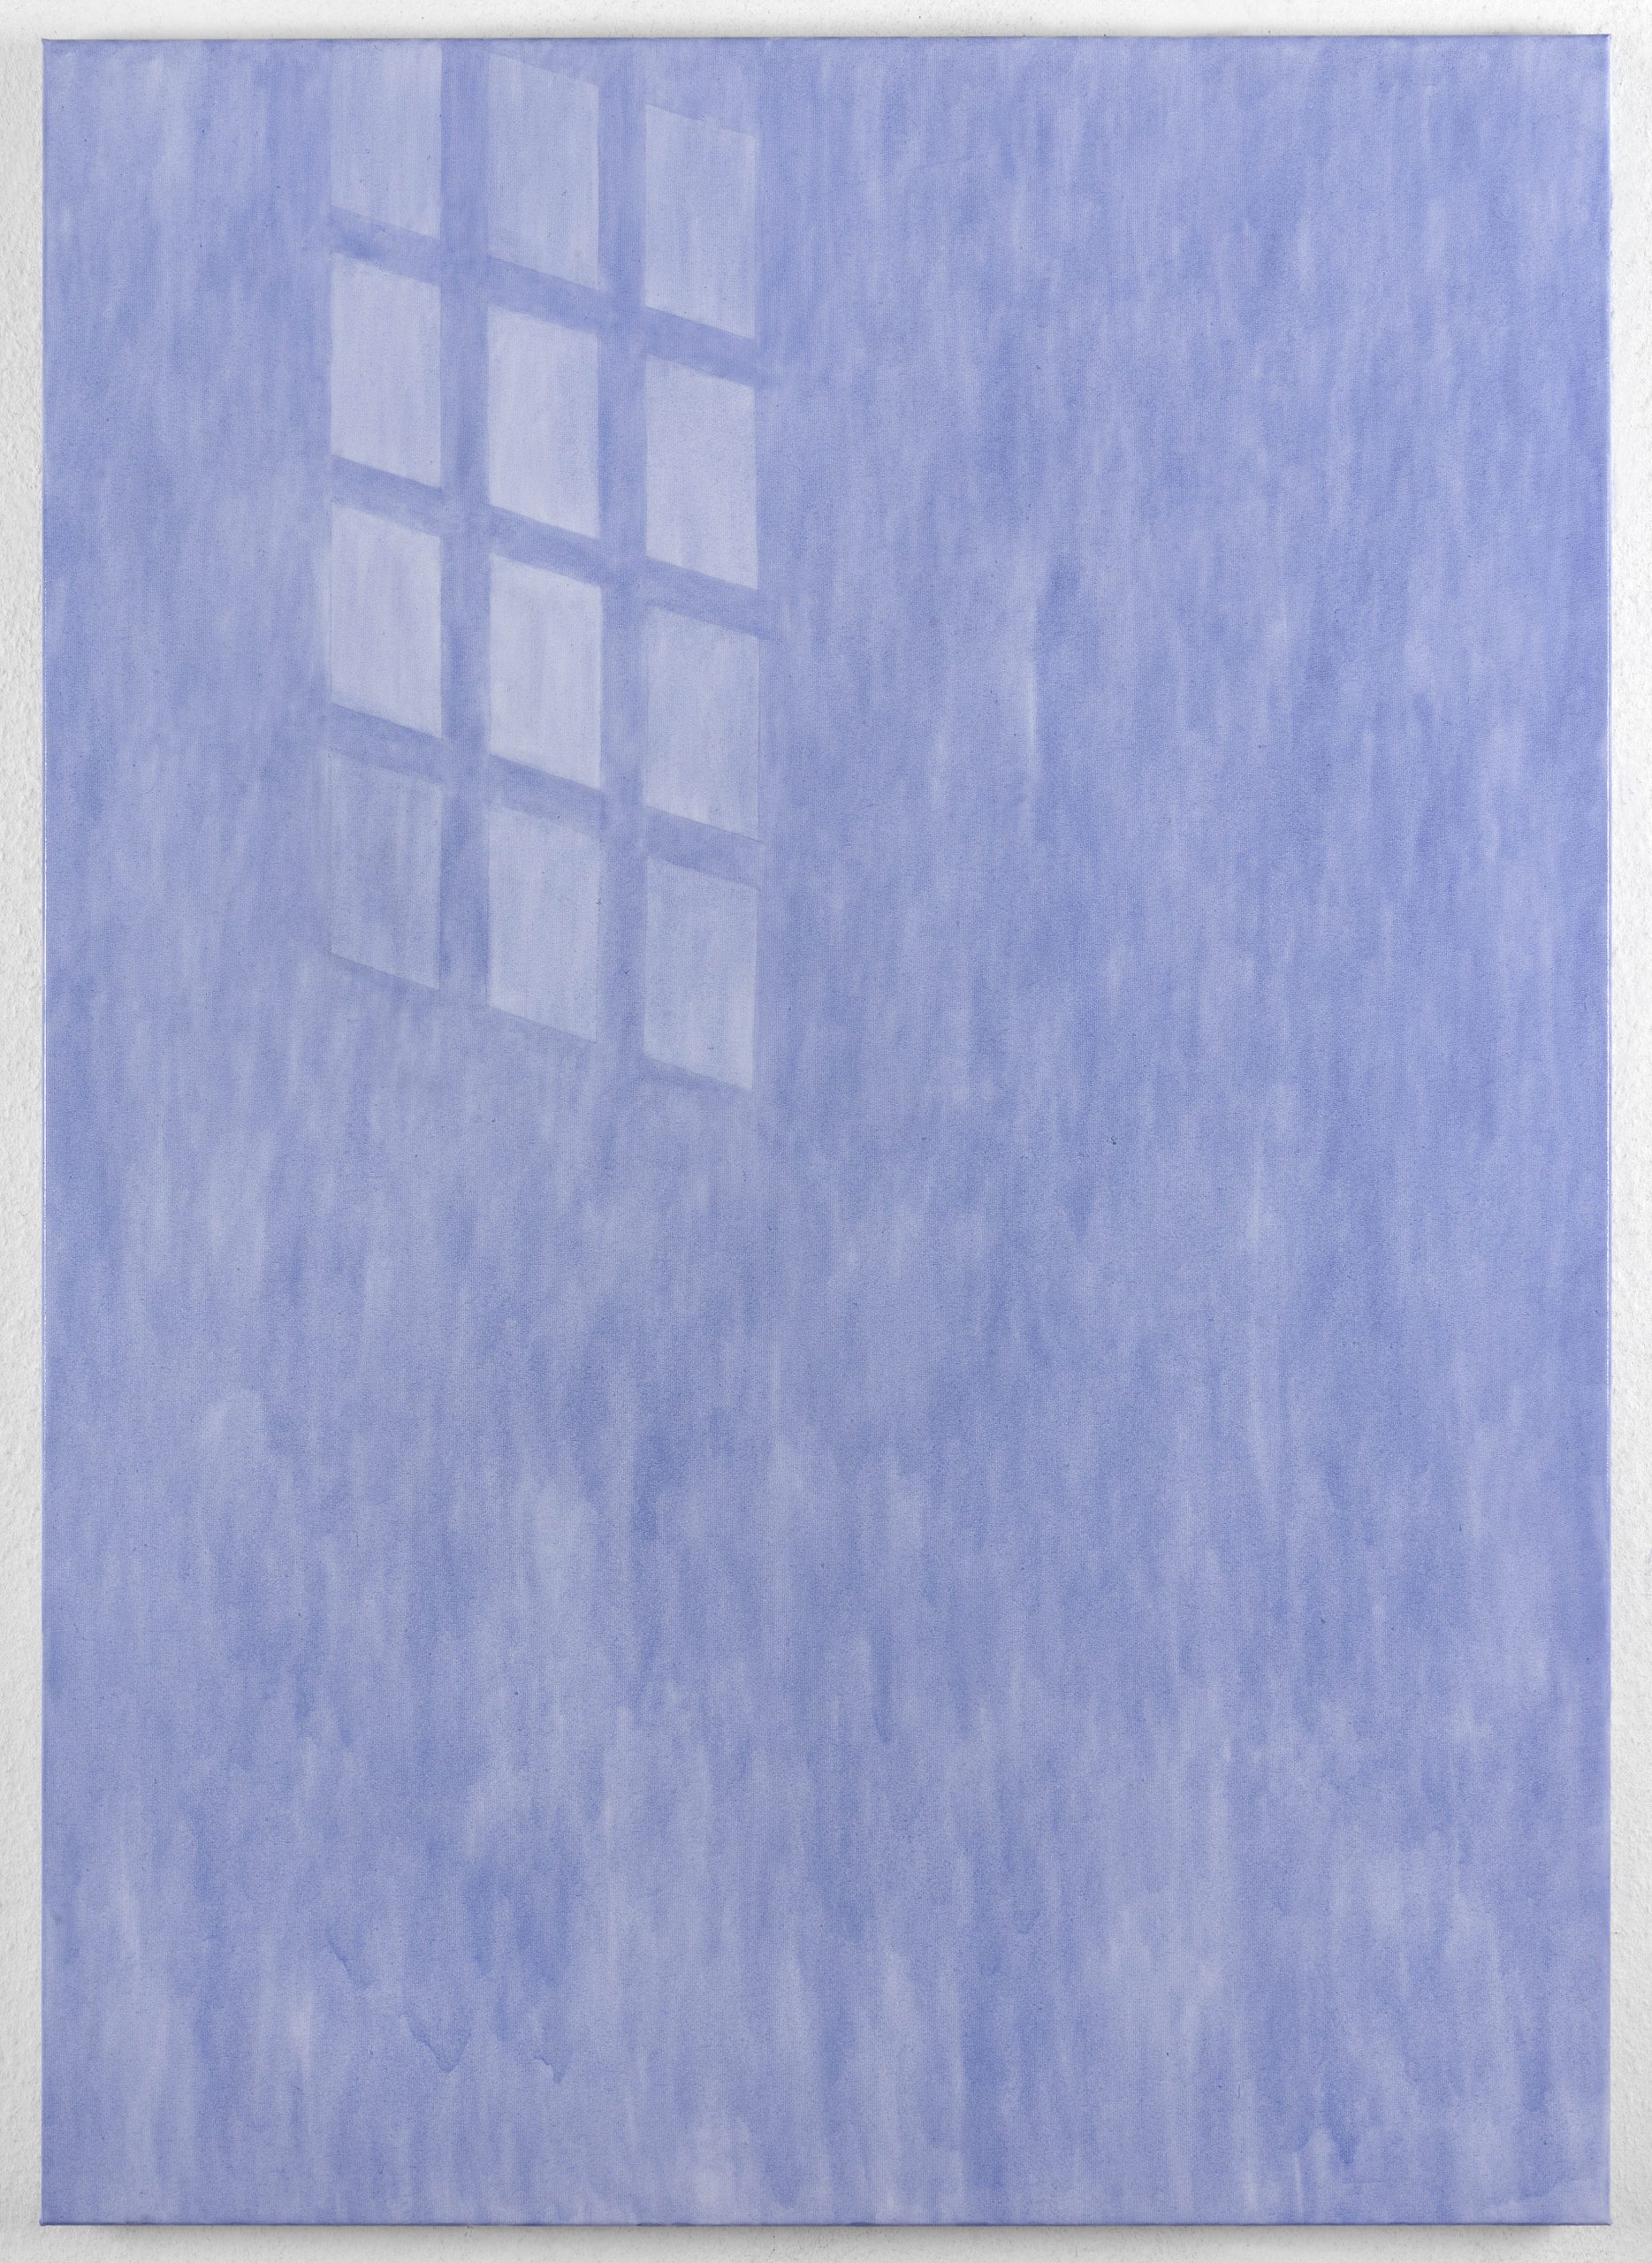 Evelyn Taocheng Wang, Dutch Window No.2 / 7 Layers, 2020